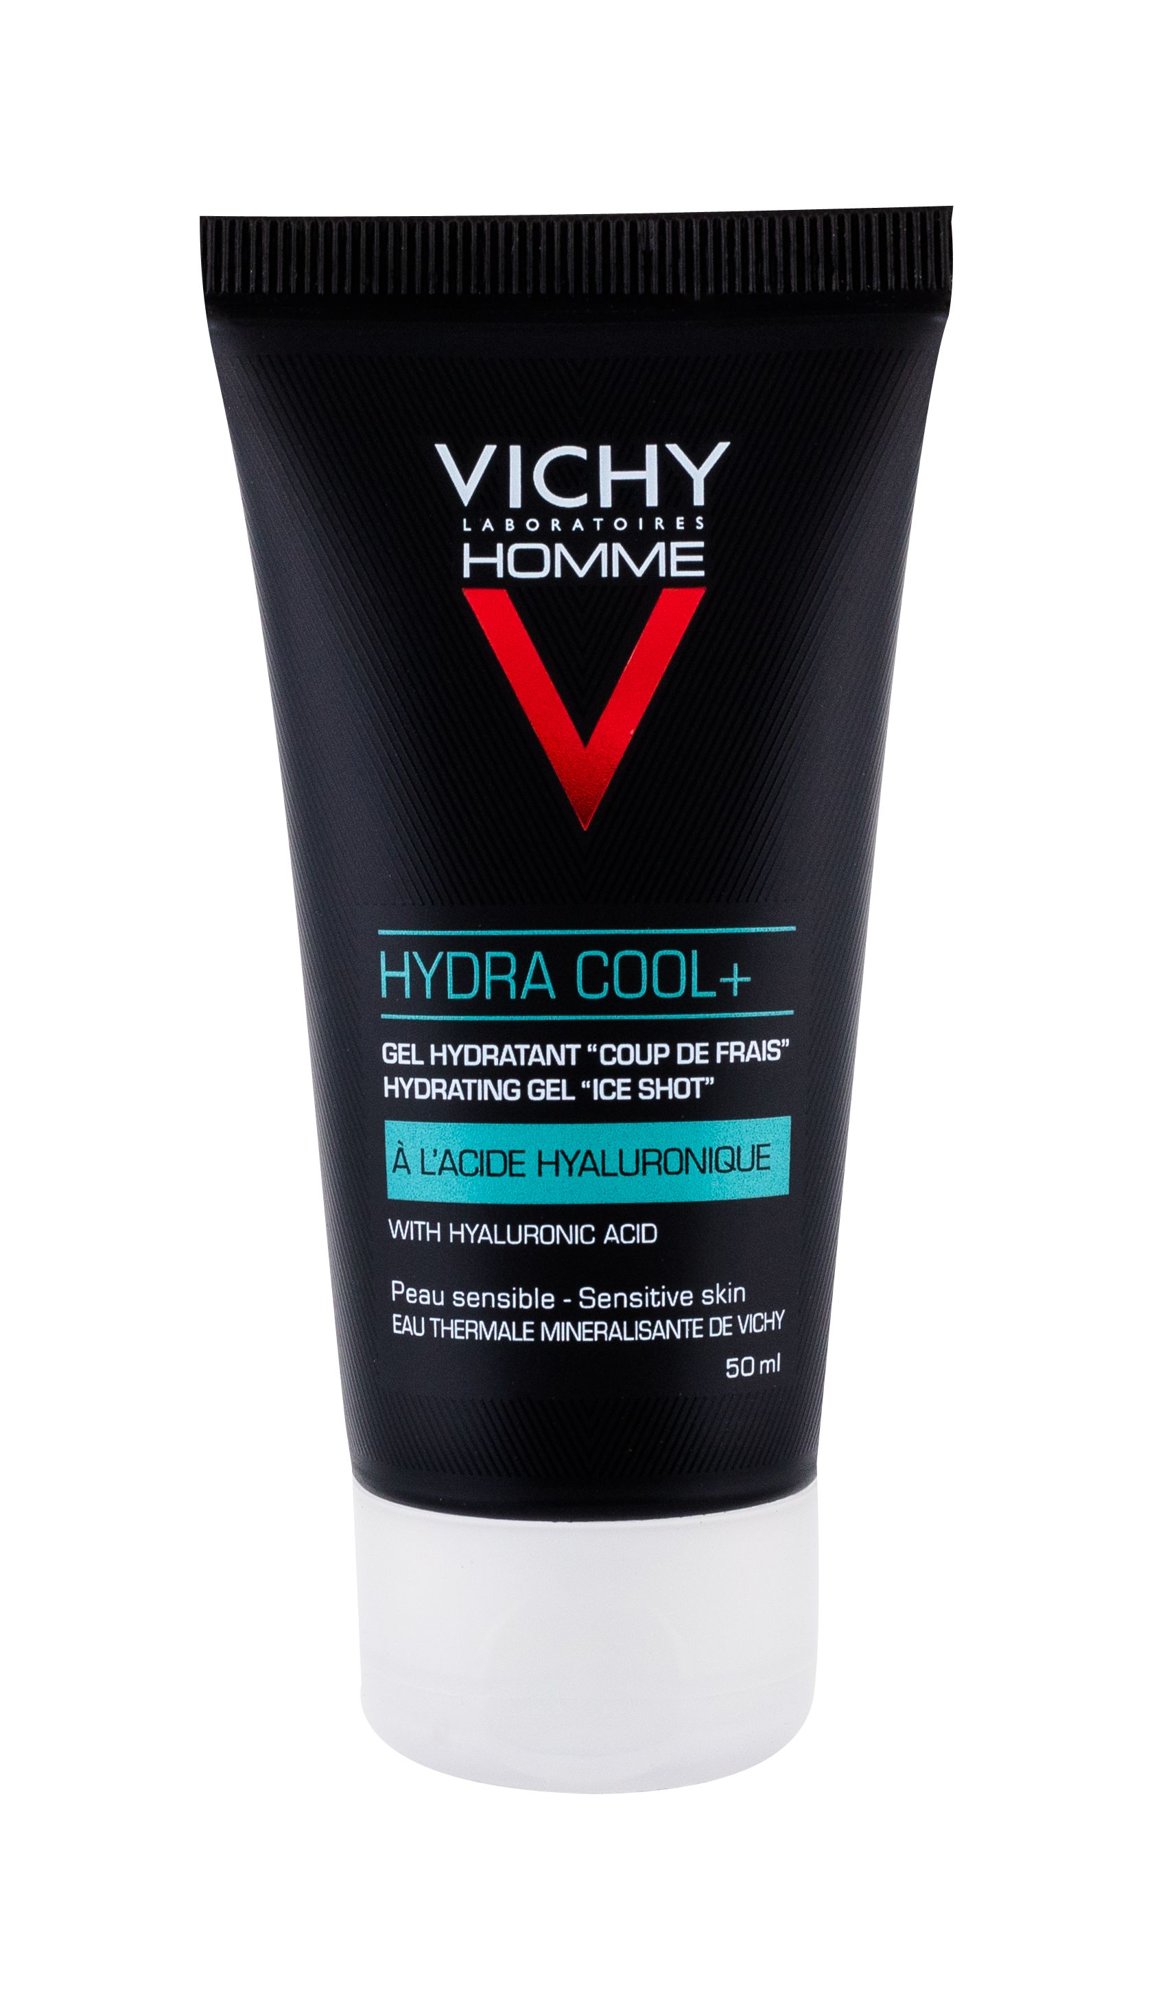 Vichy Homme Hydra Cool+ 50ml veido gelis